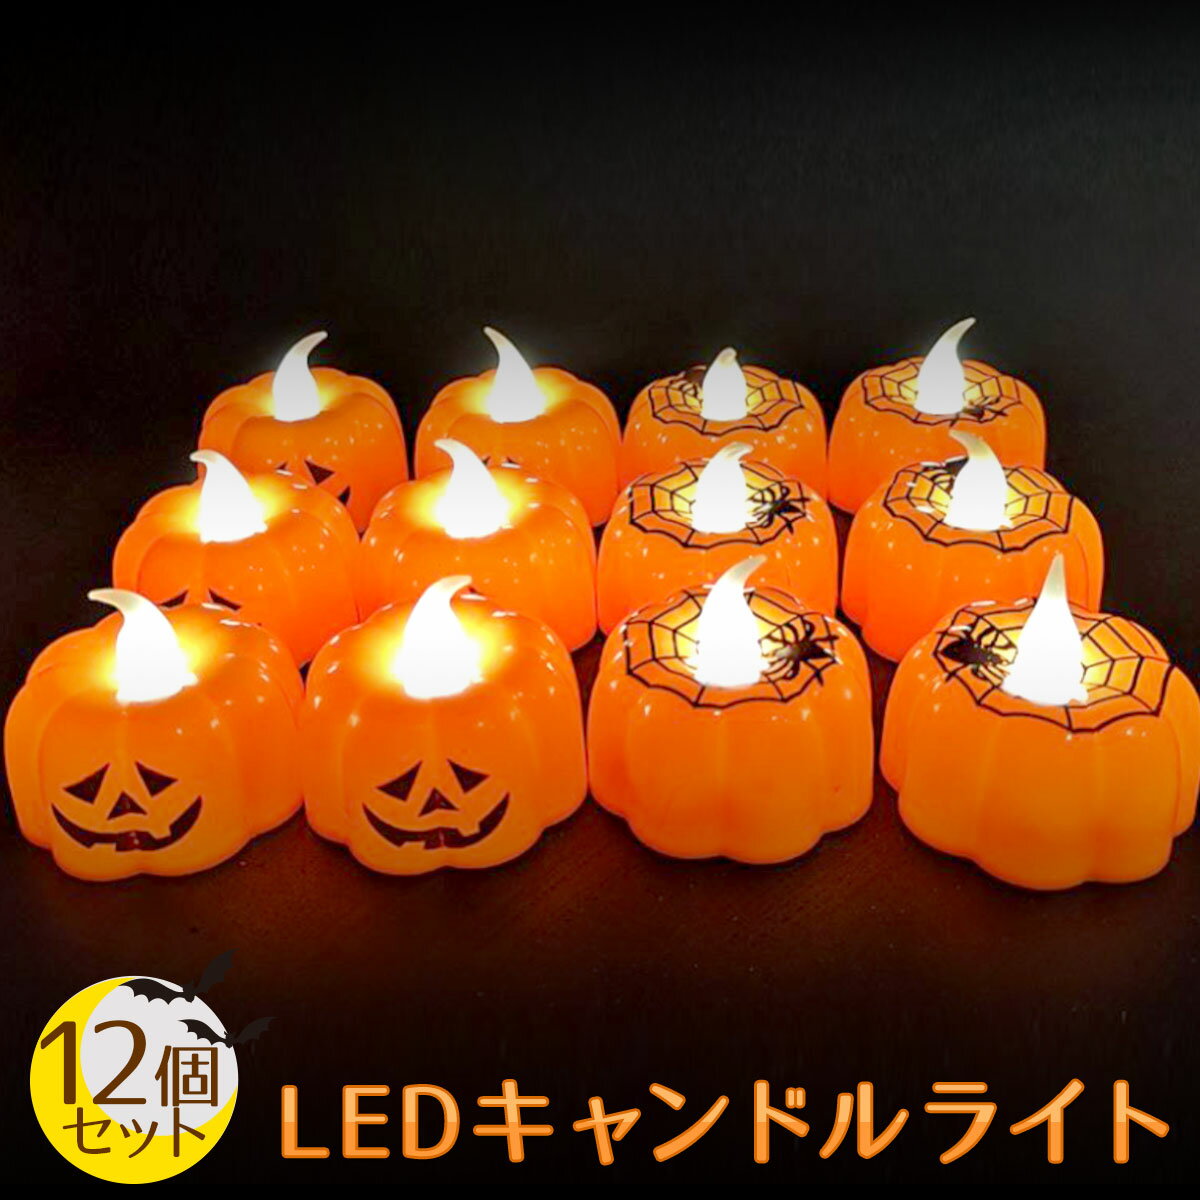 【12個セット】ハロウィン 飾り カボチャ LED キャンドル ライト Halloween 装飾 かぼちゃ ろうそく 電飾 イルミネーション 飾り付け キャンドルライト